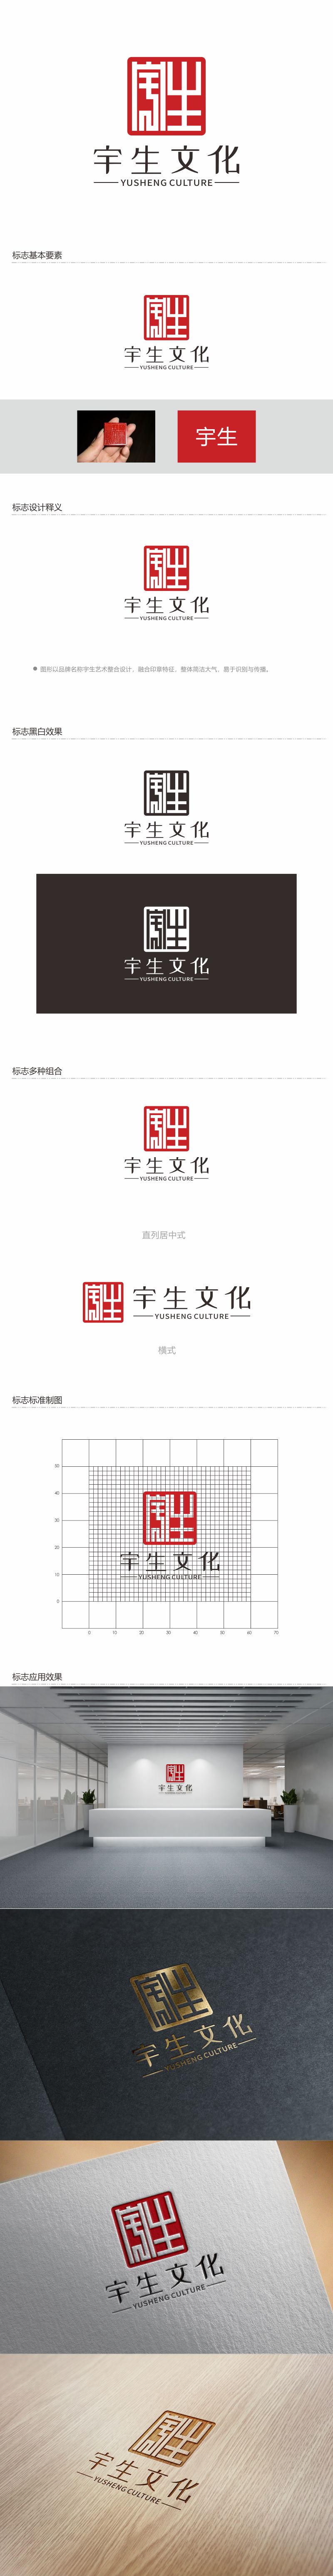 何嘉健的山东宇生文化股份有限公司logo设计